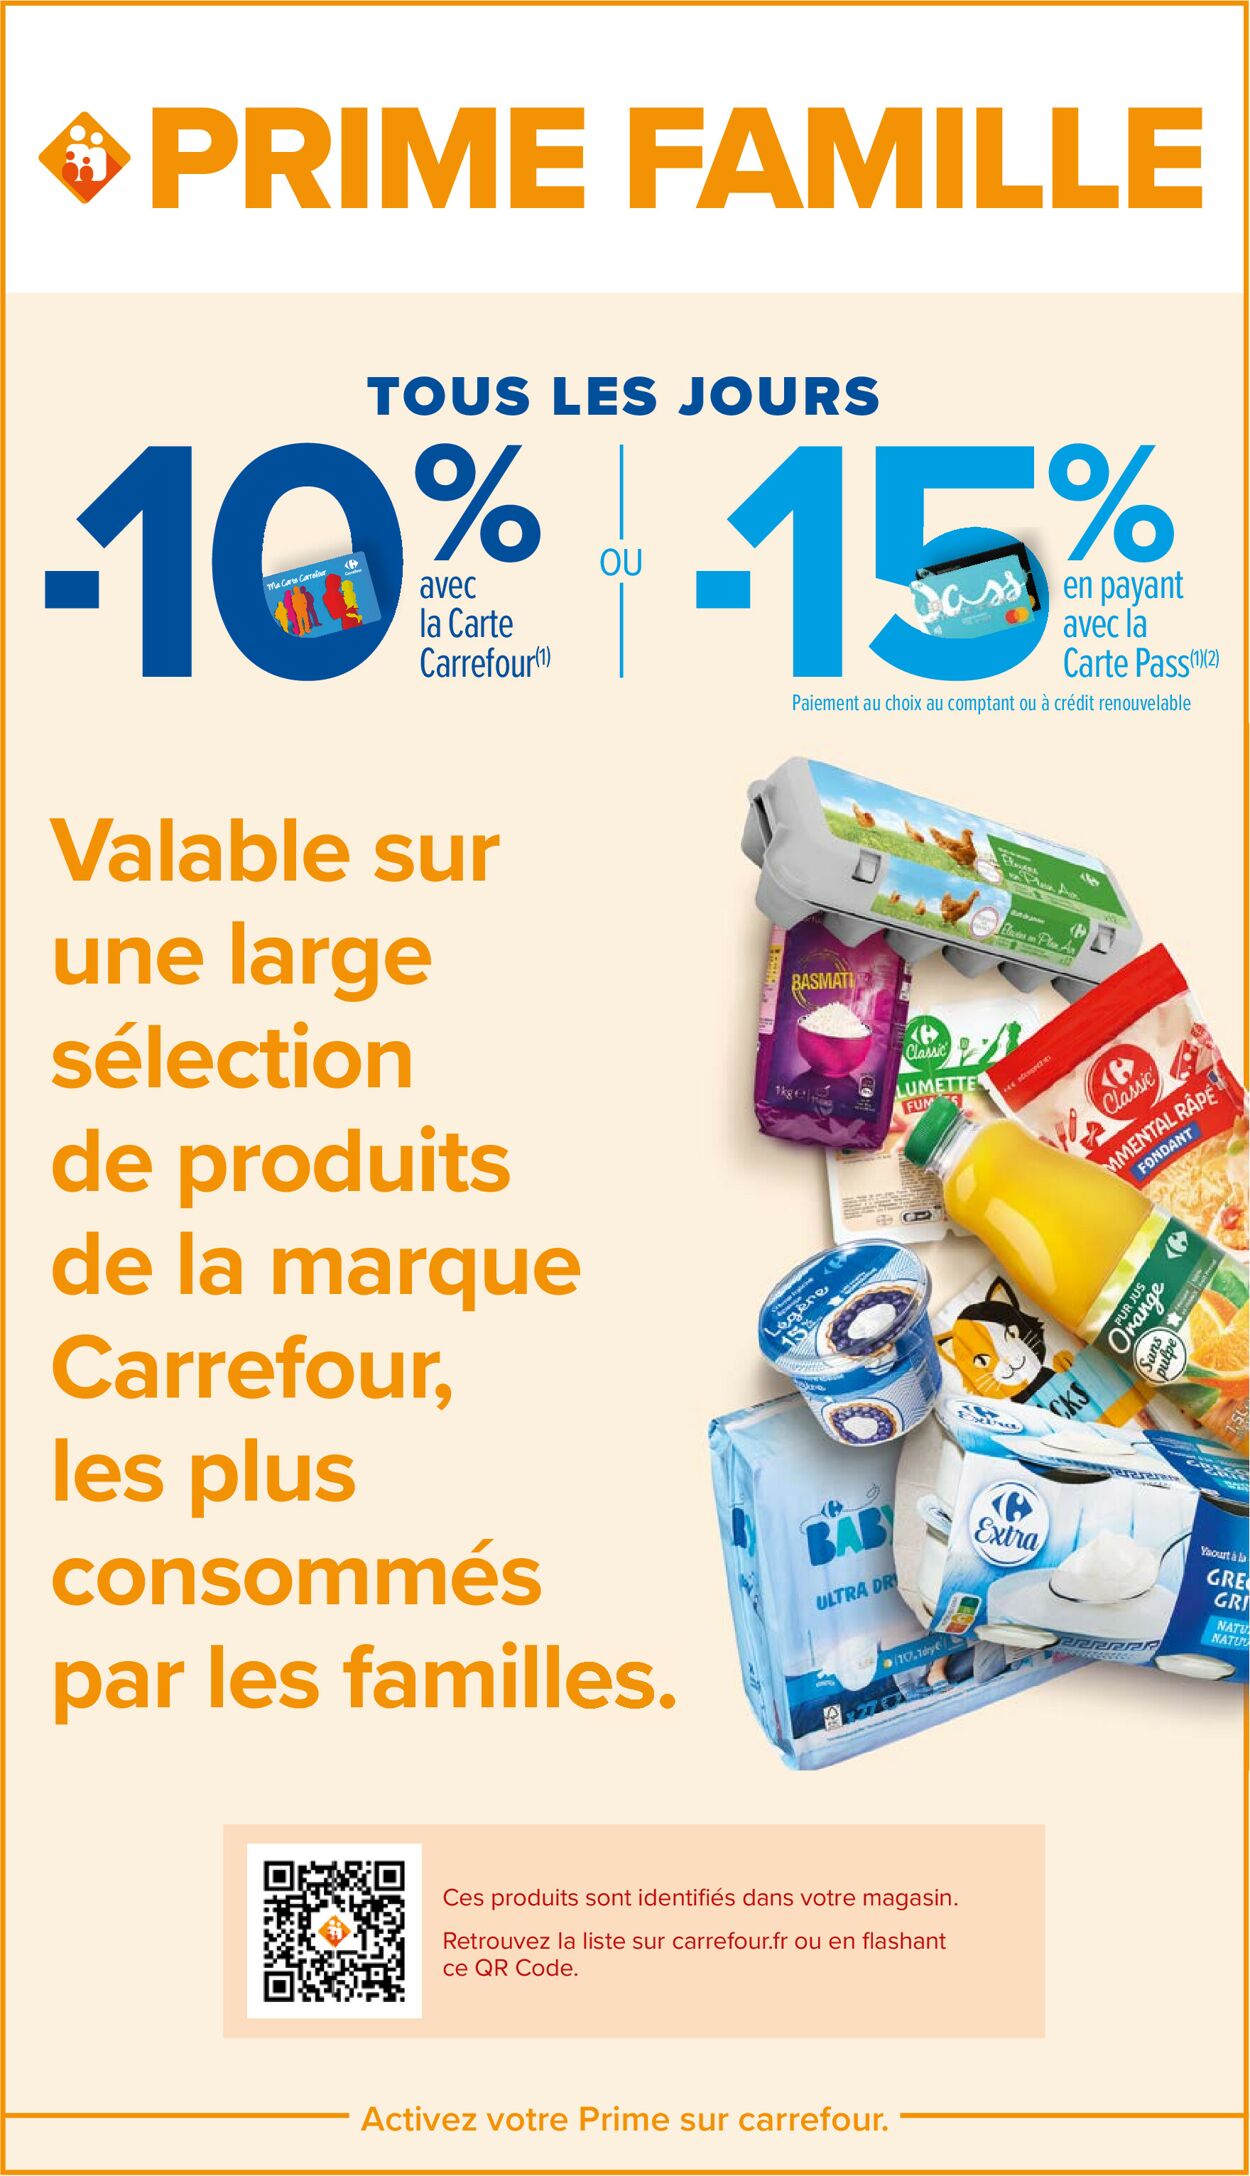 Carrefour Market Catalogue - 27.09-09.10.2022 (Page 13)